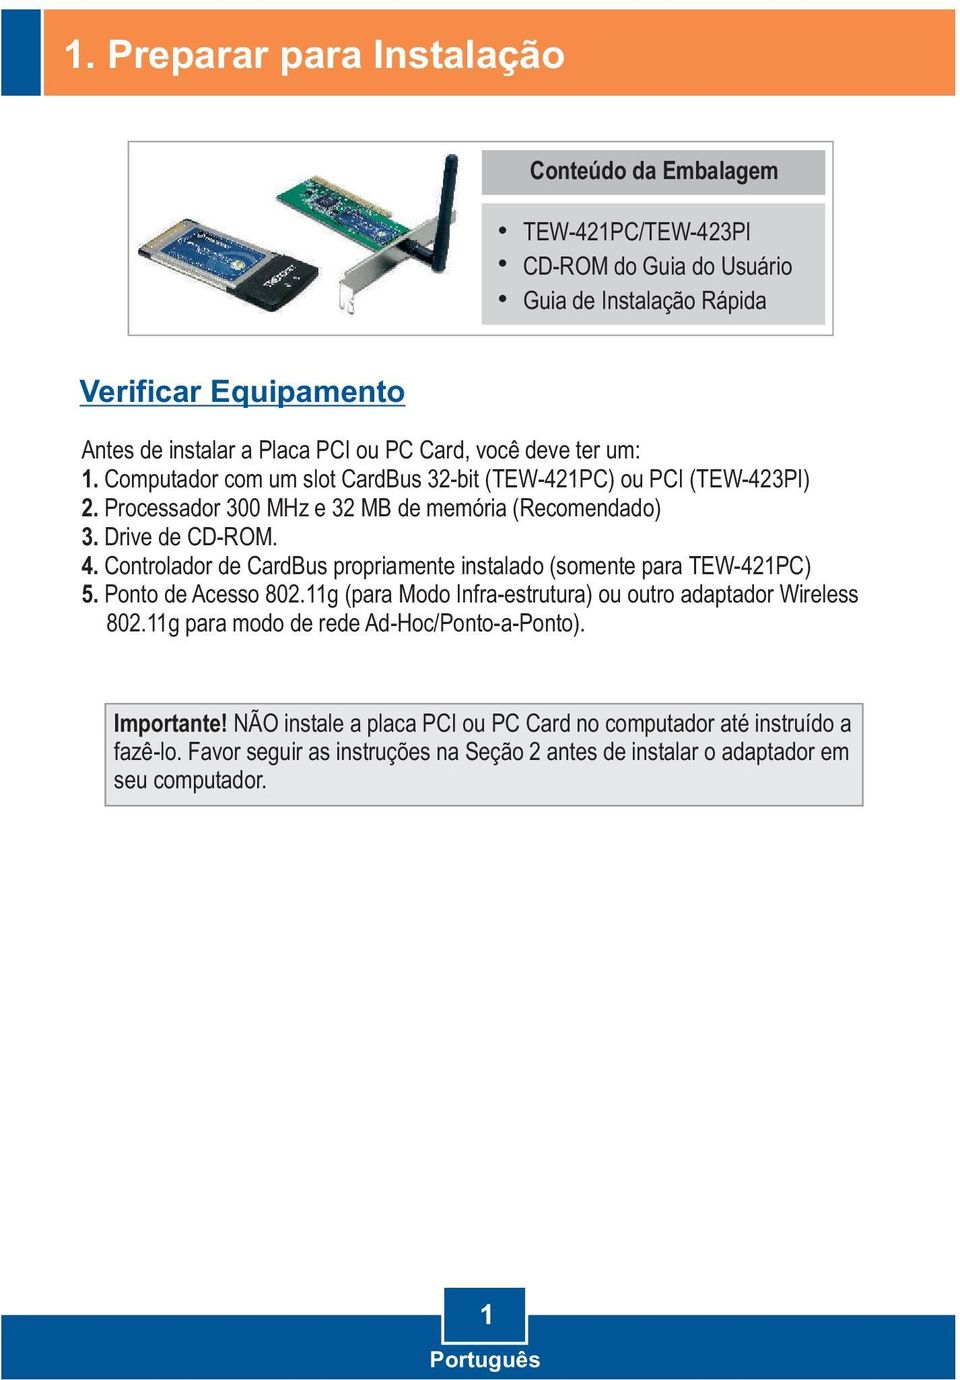 Controlador de CardBus propriamente instalado (somente para TEW-421PC) 5. Ponto de Acesso 802.11g (para Modo Infra-estrutura) ou outro adaptador Wireless 802.